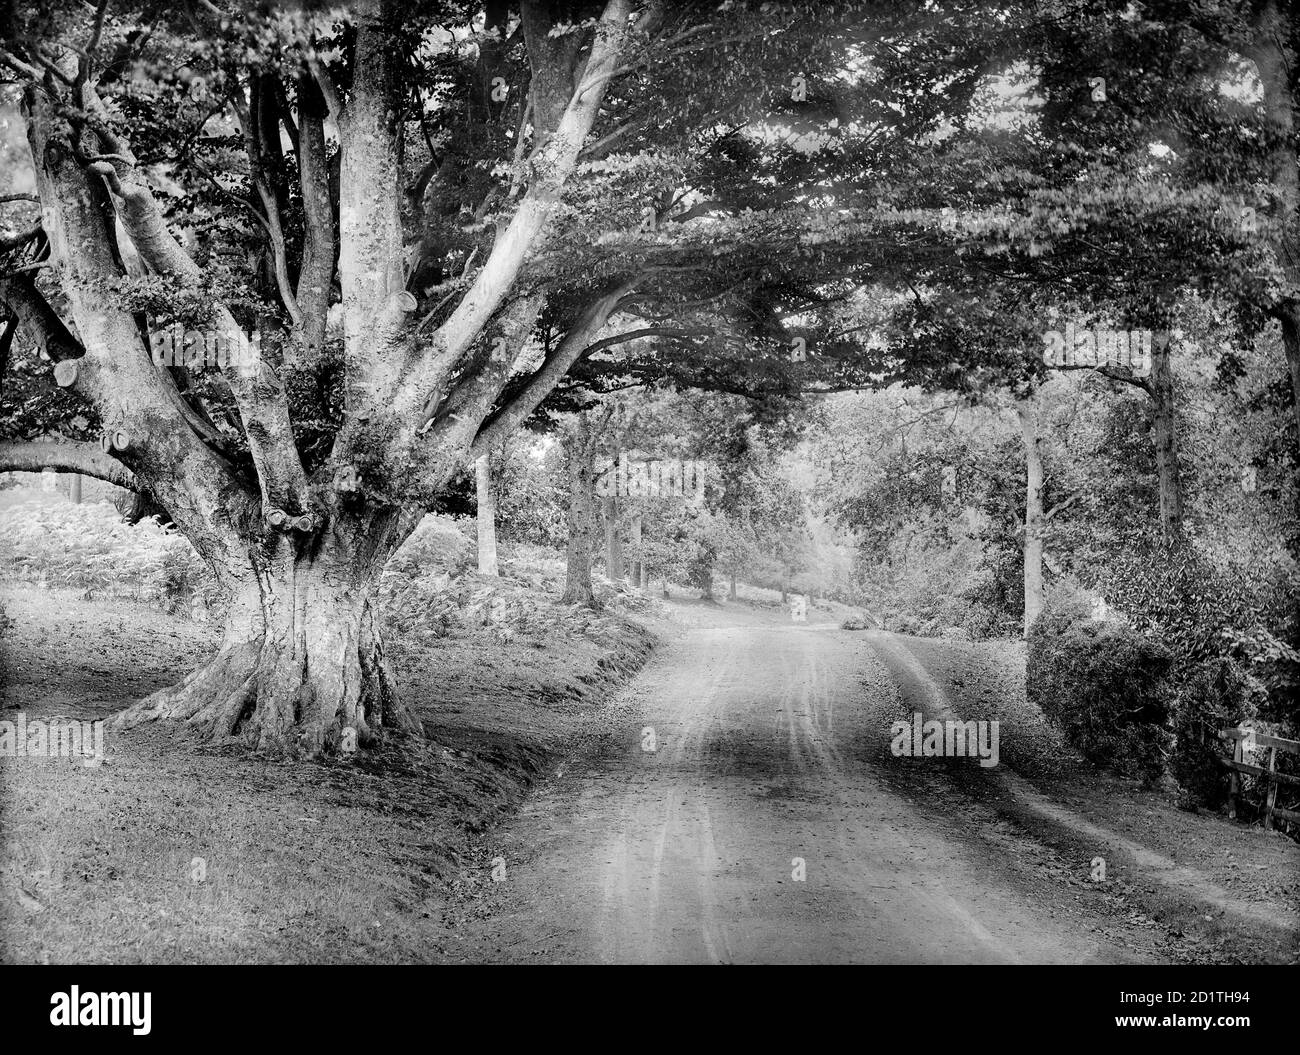 CHÂTEAU DE HIGHCLERE, Hampshire. Vue sur une route qui traverse le parc, avec un grand chêne au premier plan. Photographié par Henry Taunt (actif 1860 - 1922). Banque D'Images